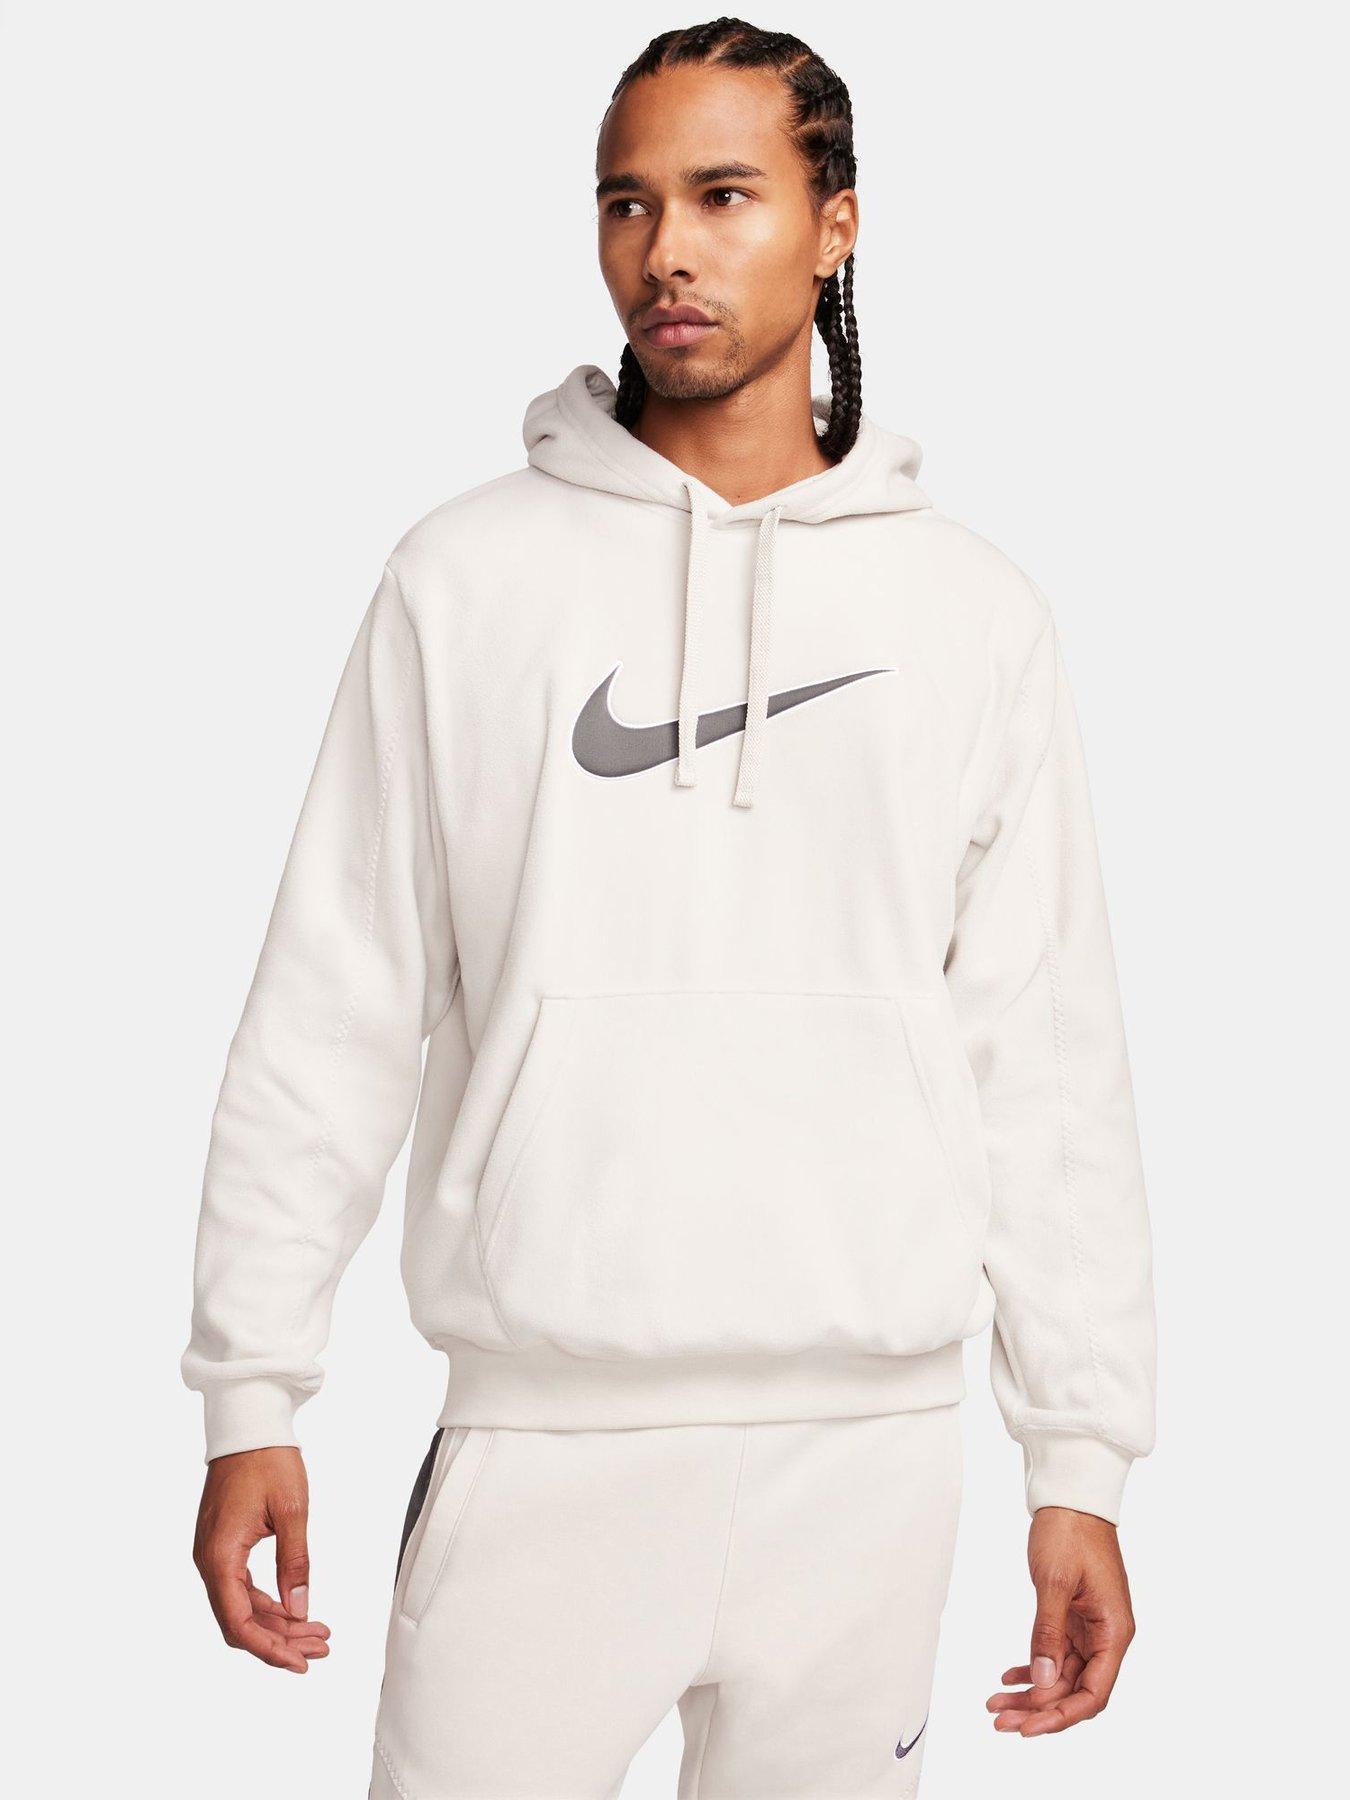 Hoodies & sweatshirts, Sportswear, Men, Nike